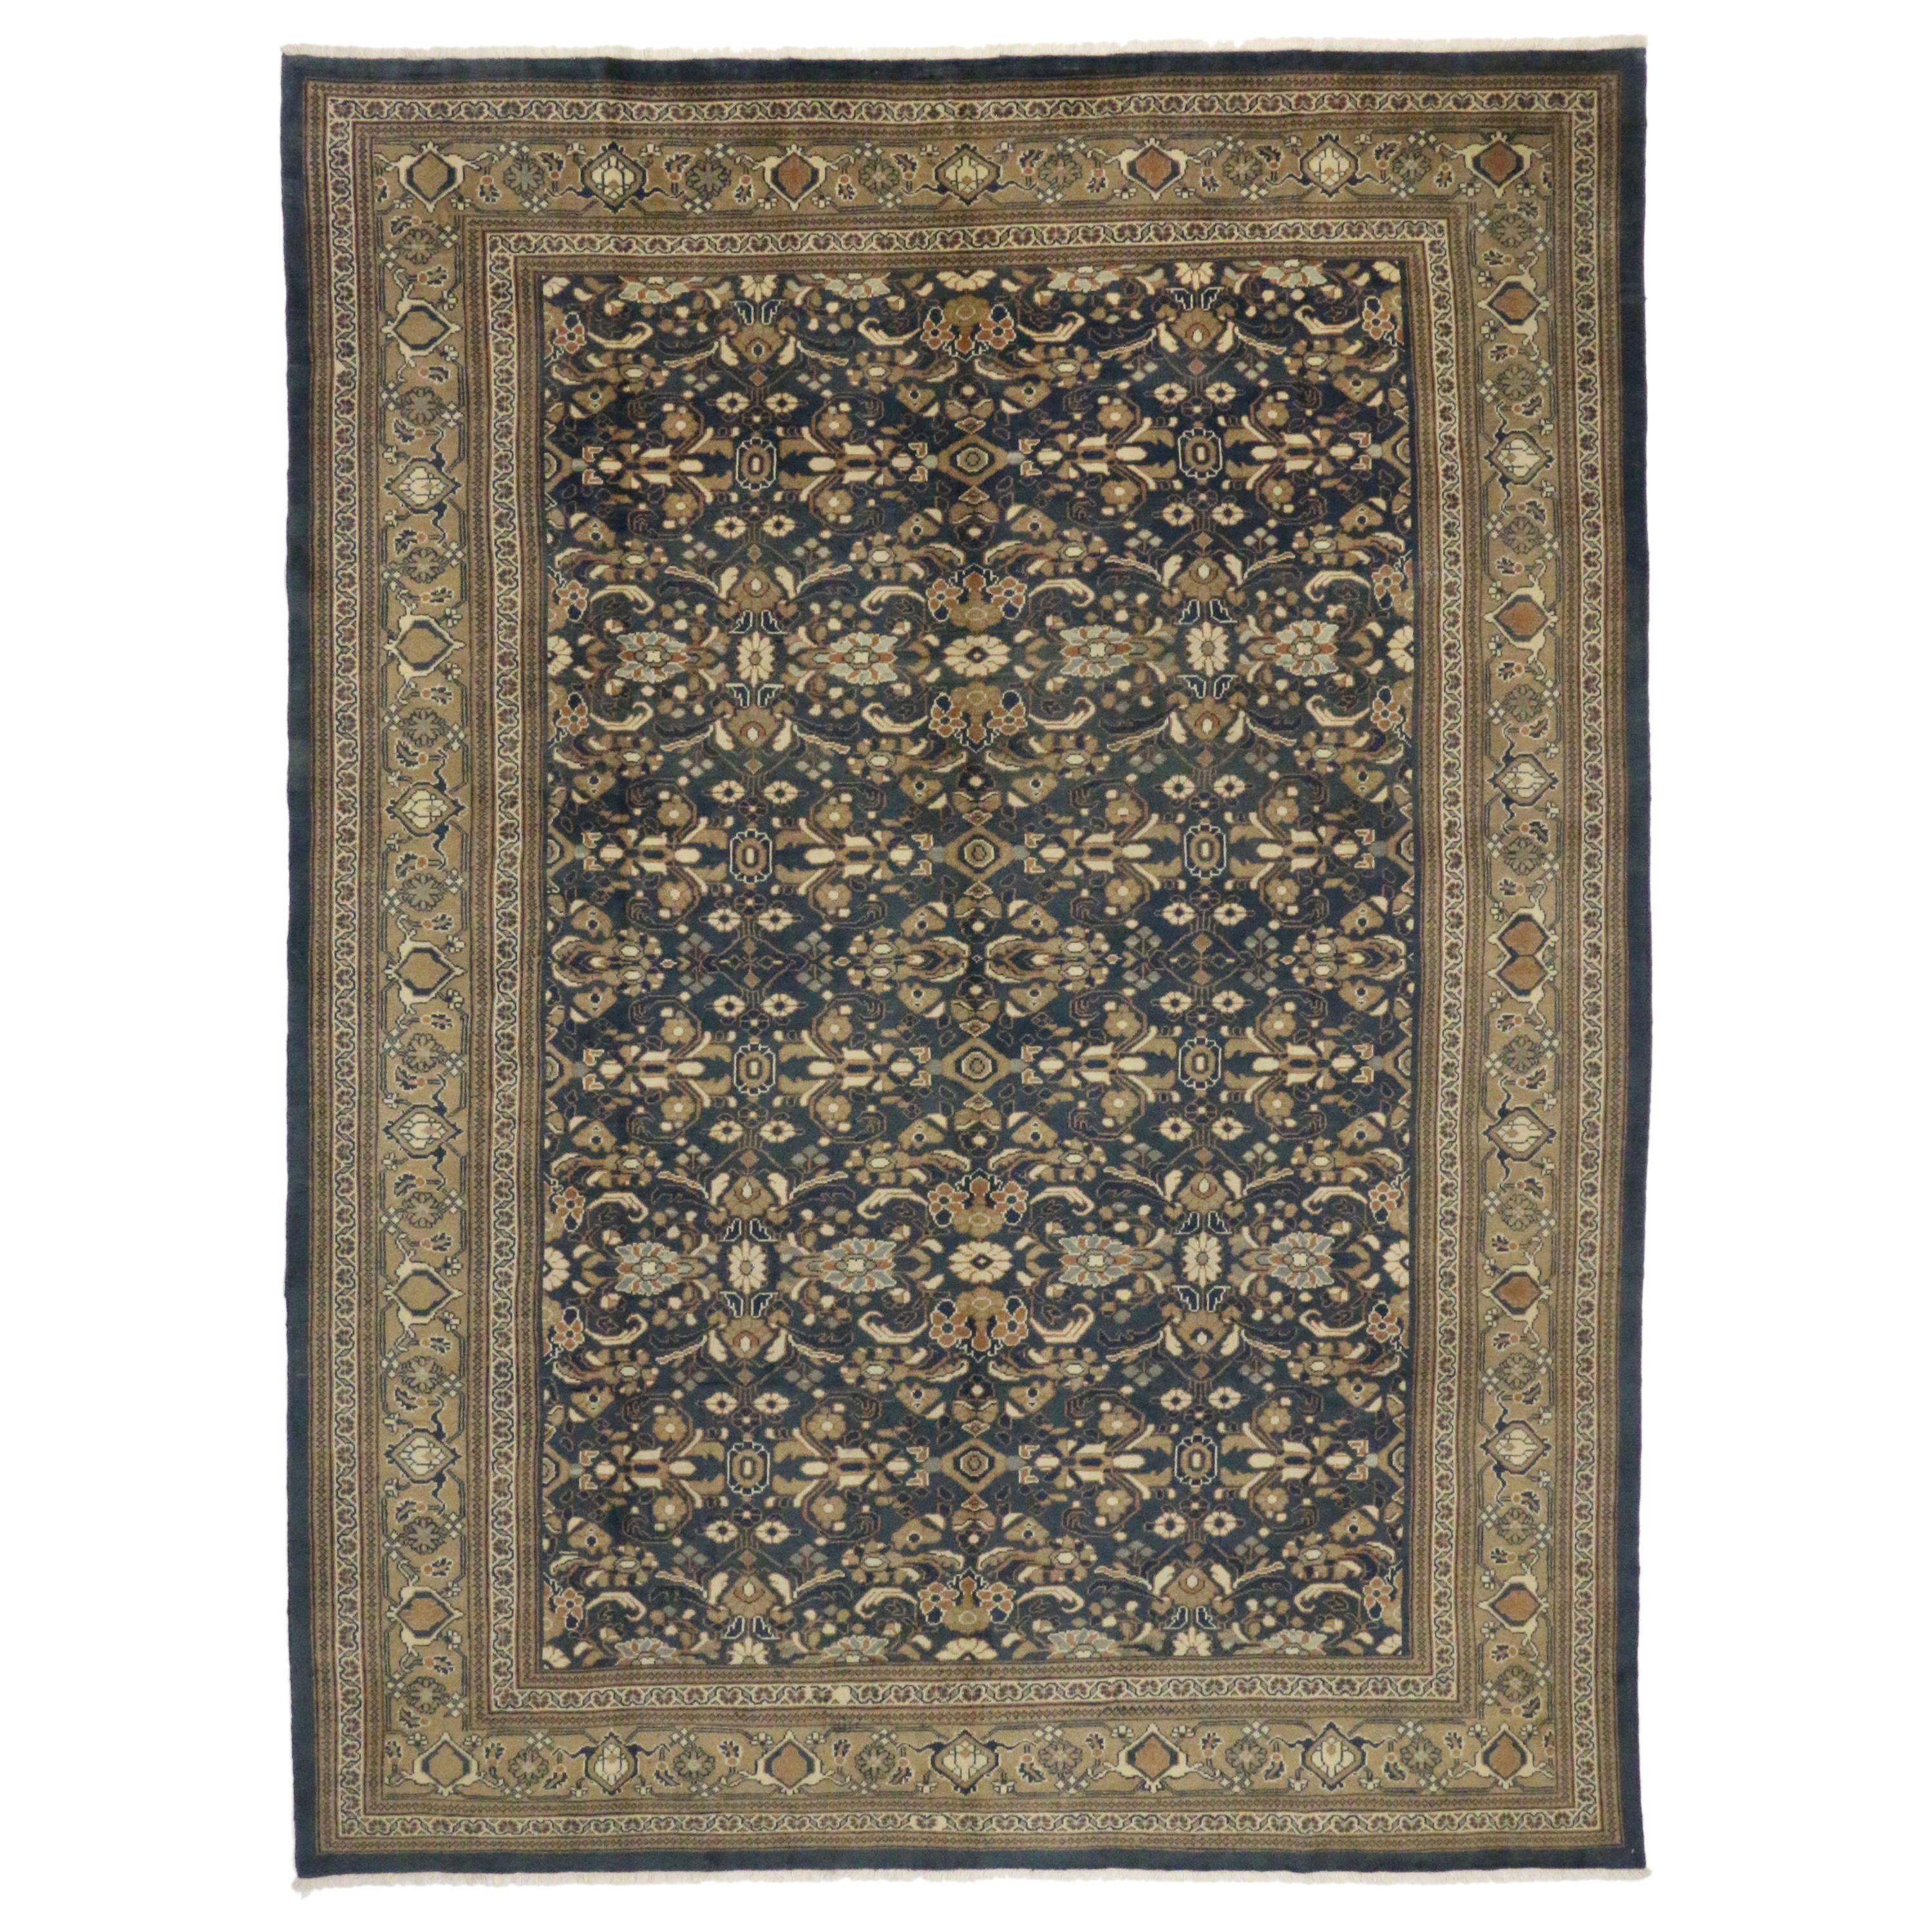 Persischer Mahal-Teppich im traditionellen englischen Stil